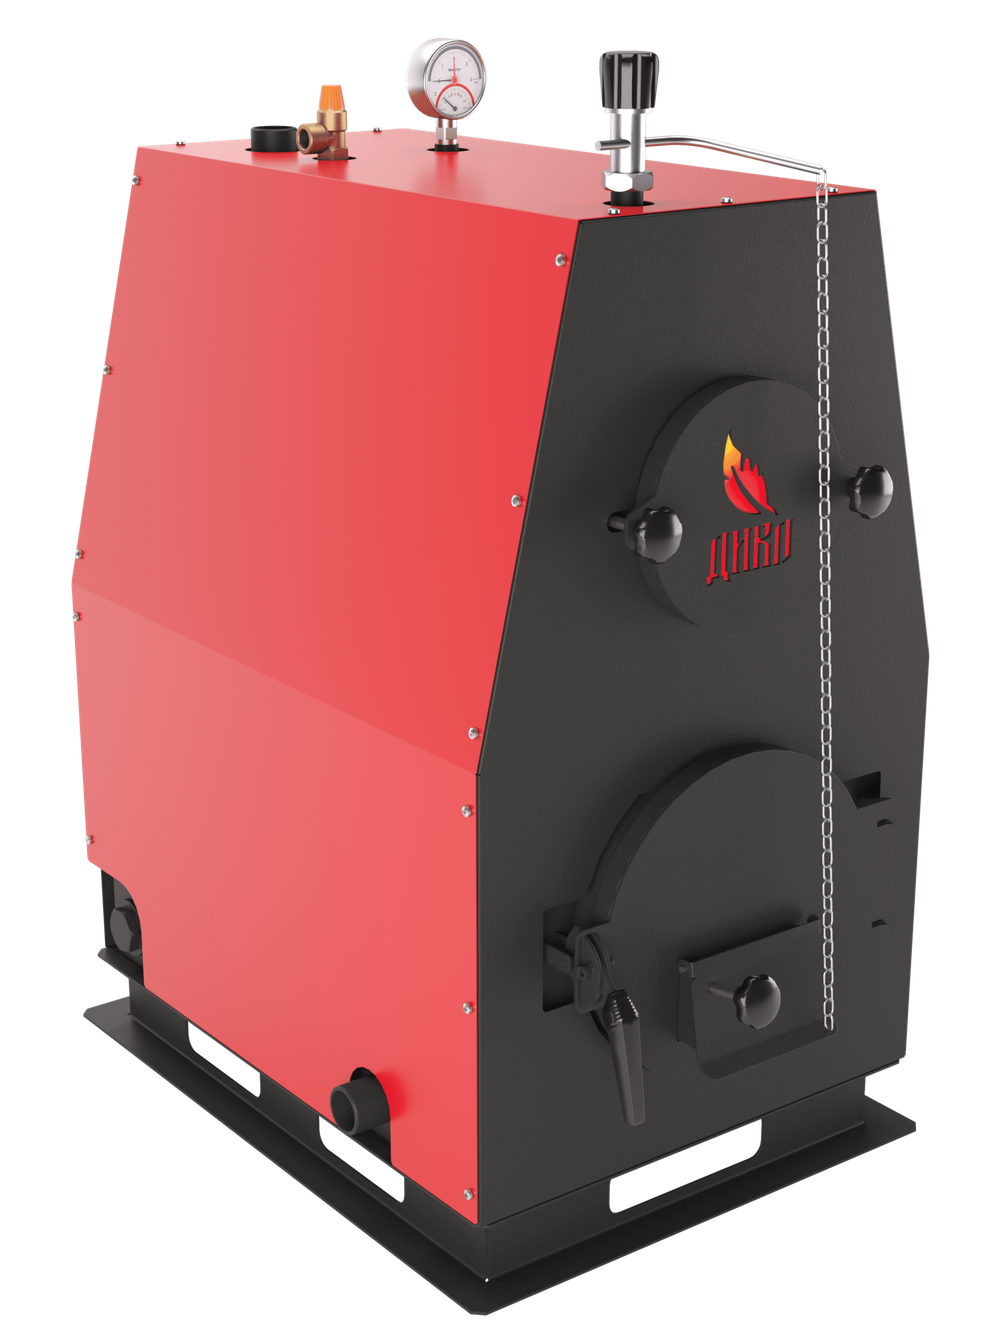 Твердотопливный котел длительного горения ДИВО-16 в кожухе на 16 кВт. Помещение до 432 куб.м.